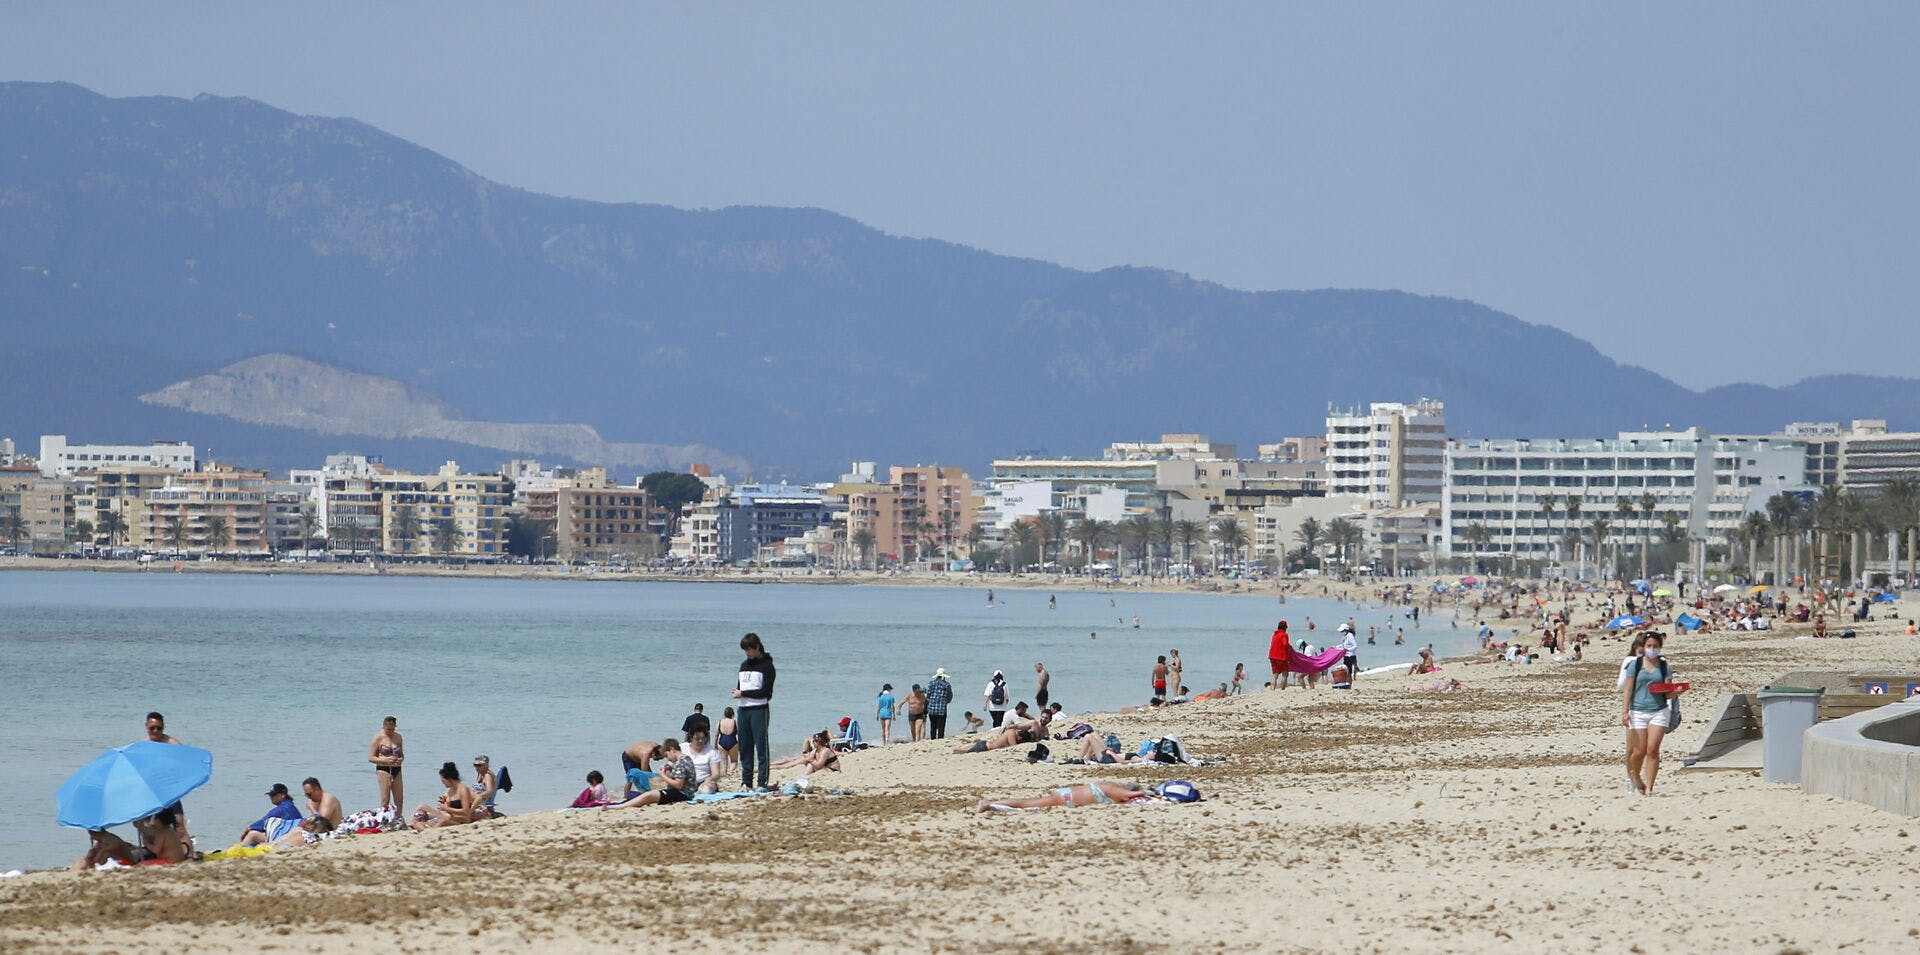 Voldtægten fandt angiveligt sted på et hotelværelse i det populære turistområde Playa de Palma.